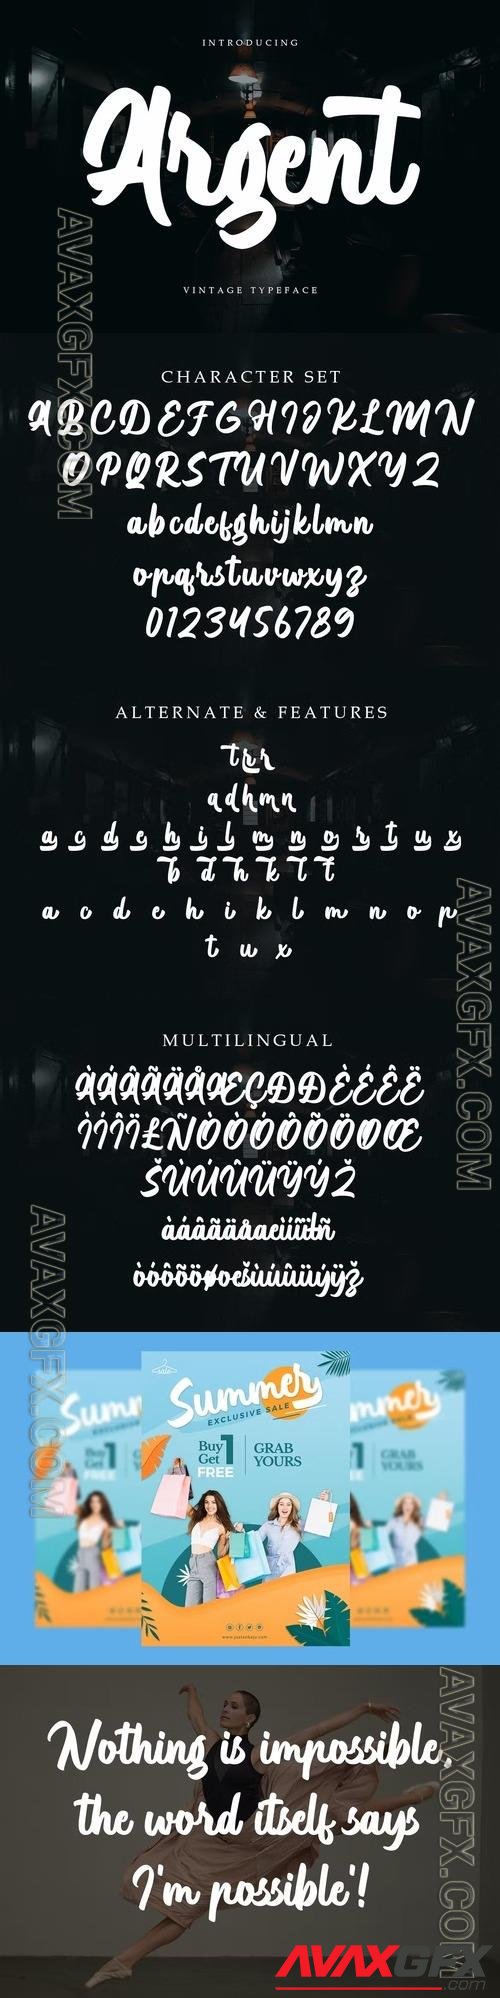 Argent - Vintage Typeface 88Z8LSB